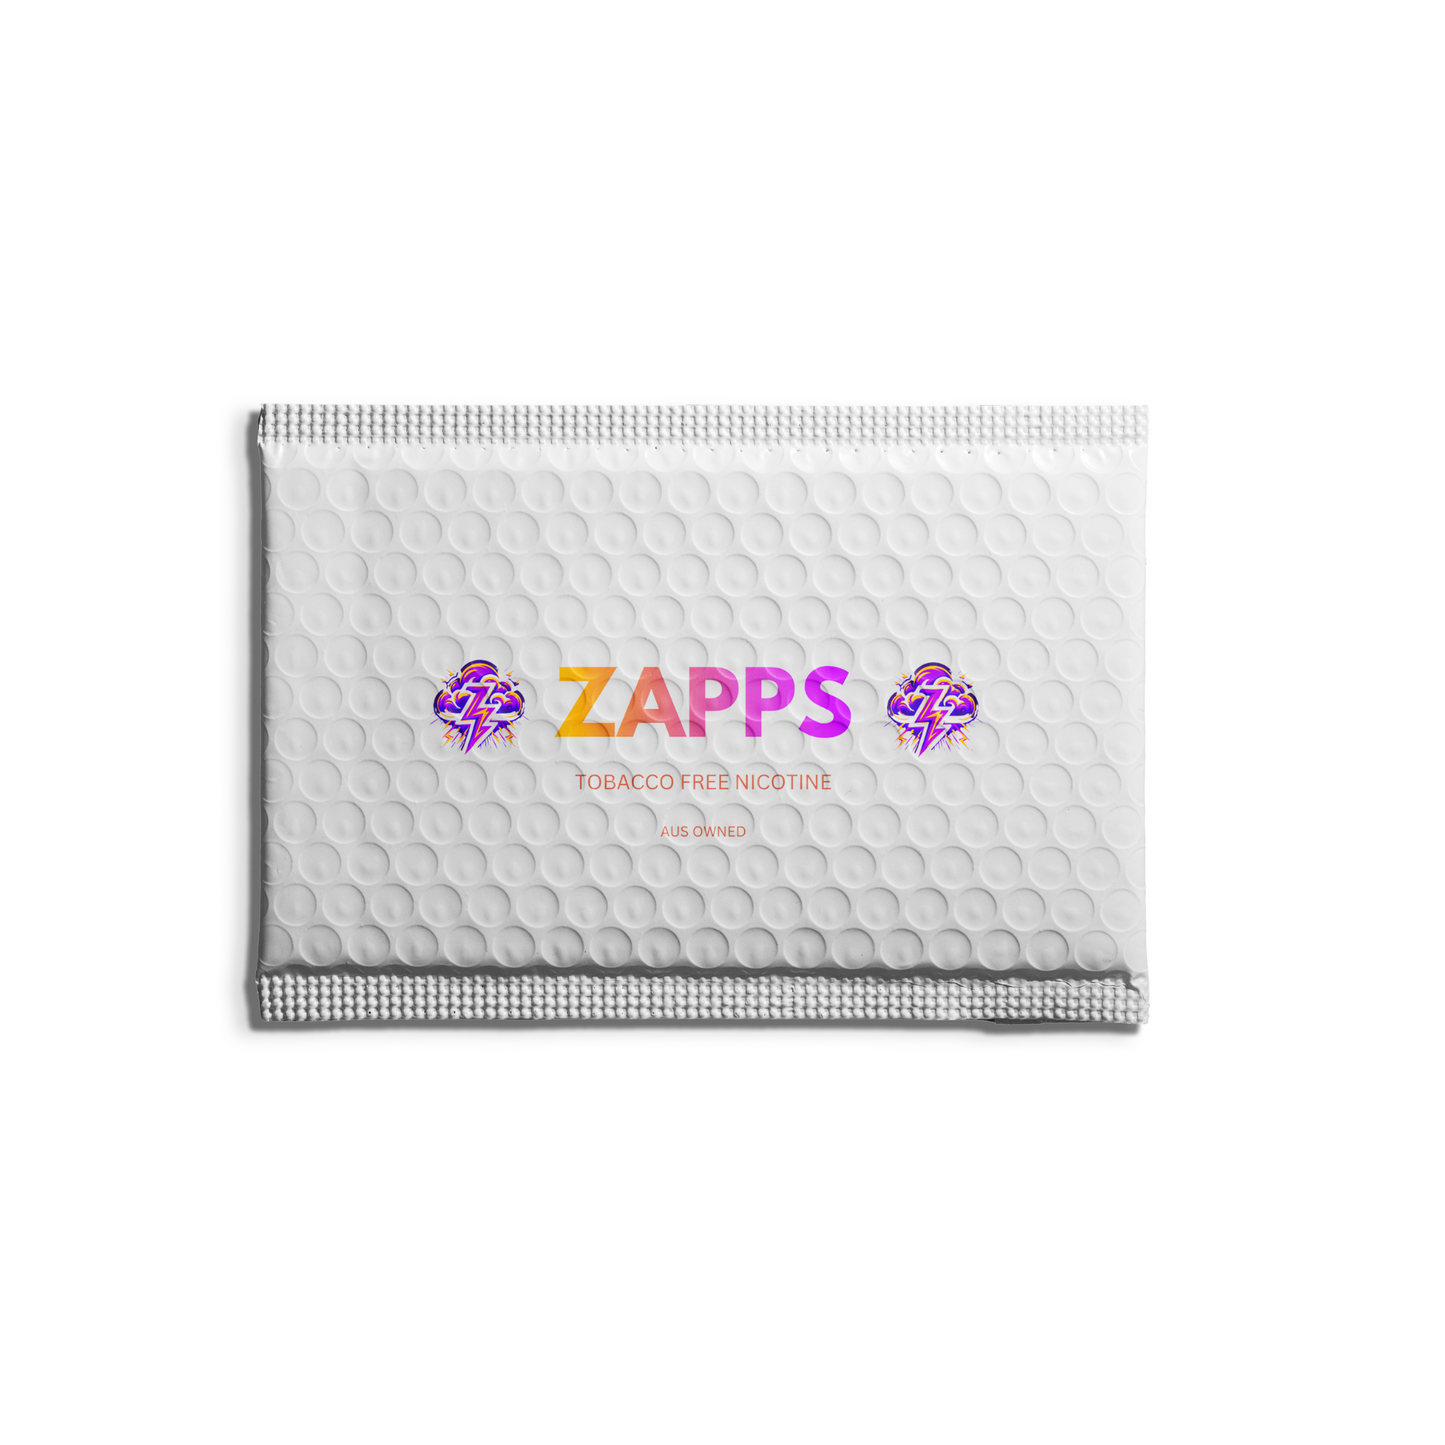 ZAPP - Energy Drink (9mg)